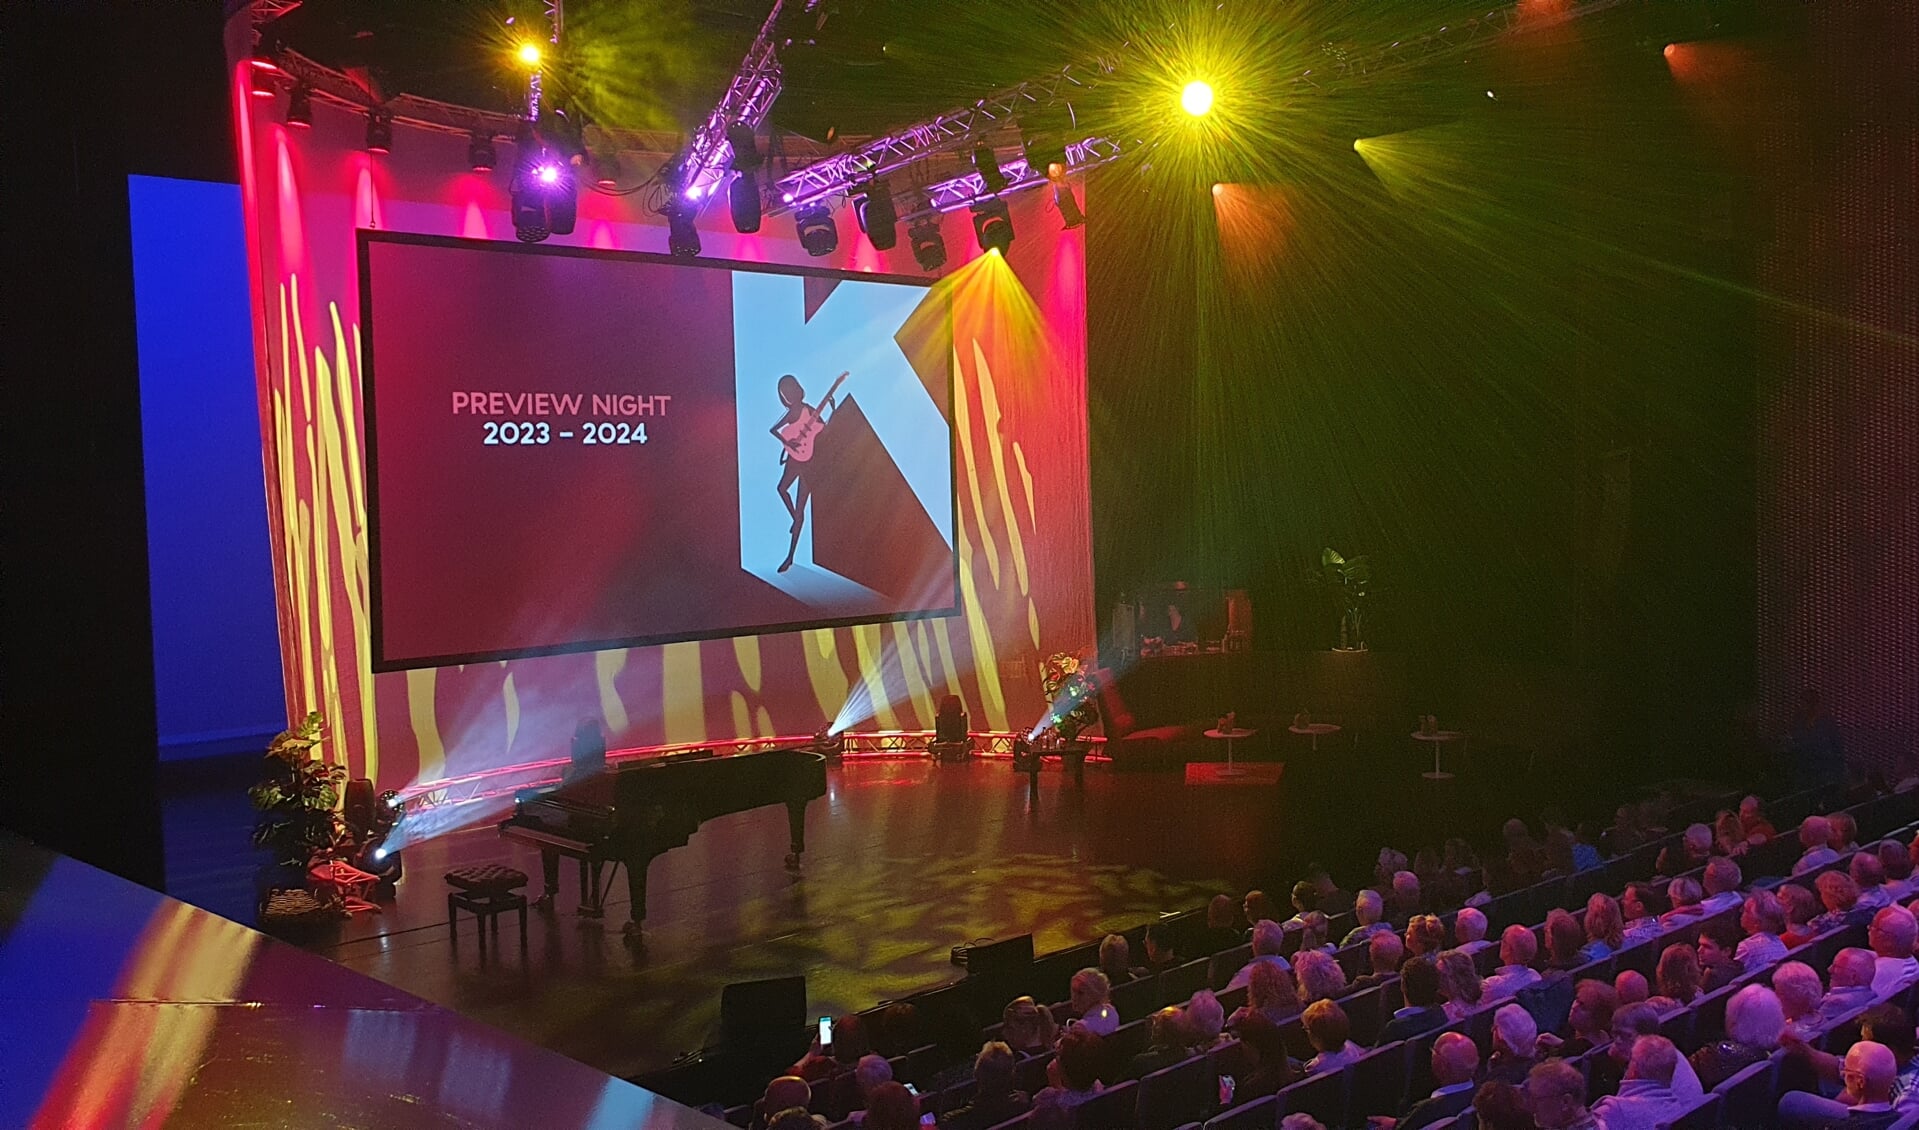 Tijdens de Preview Night in de grote zaal werd woensdagavond vooruitgeblikt op het programma voor 2023-2024. (Foto: Almere DEZE WEEK)